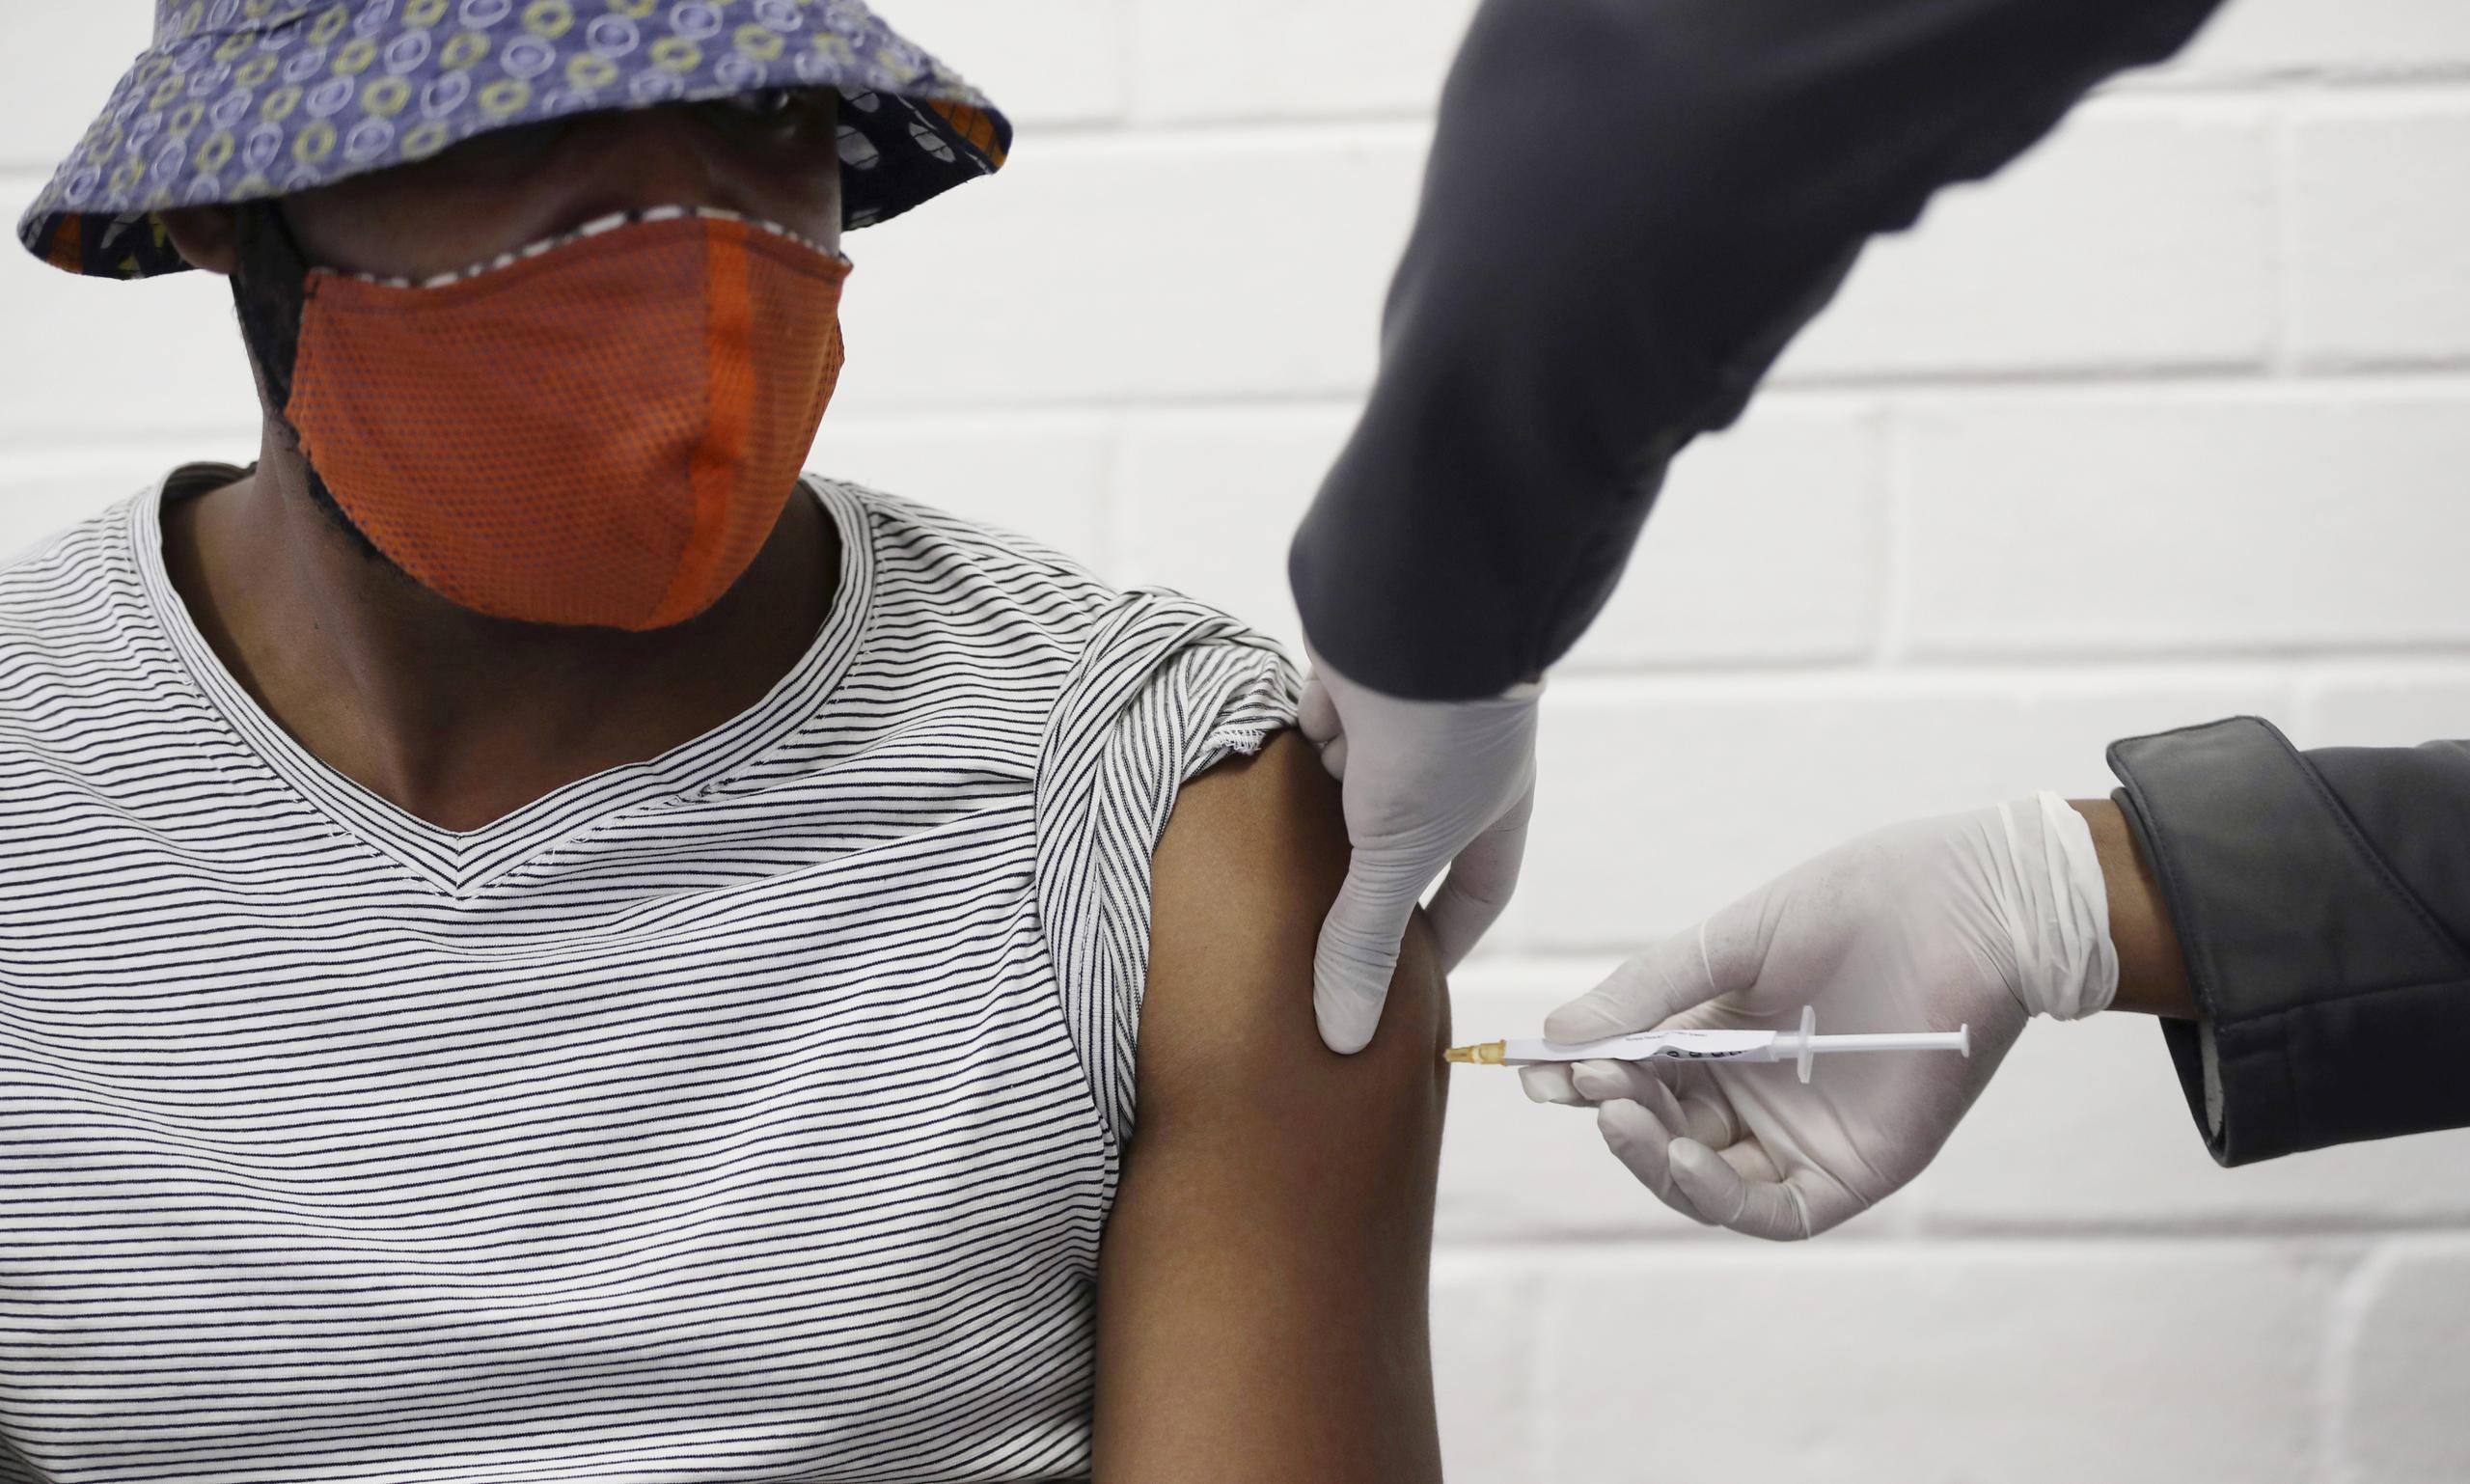 Voluntario recibe una vacuna de ensayo contra el COVID-19 creada en la Universidad de Oxford, Gran Bretaña, en Soweto, Johannesburgo, Sudáfrica